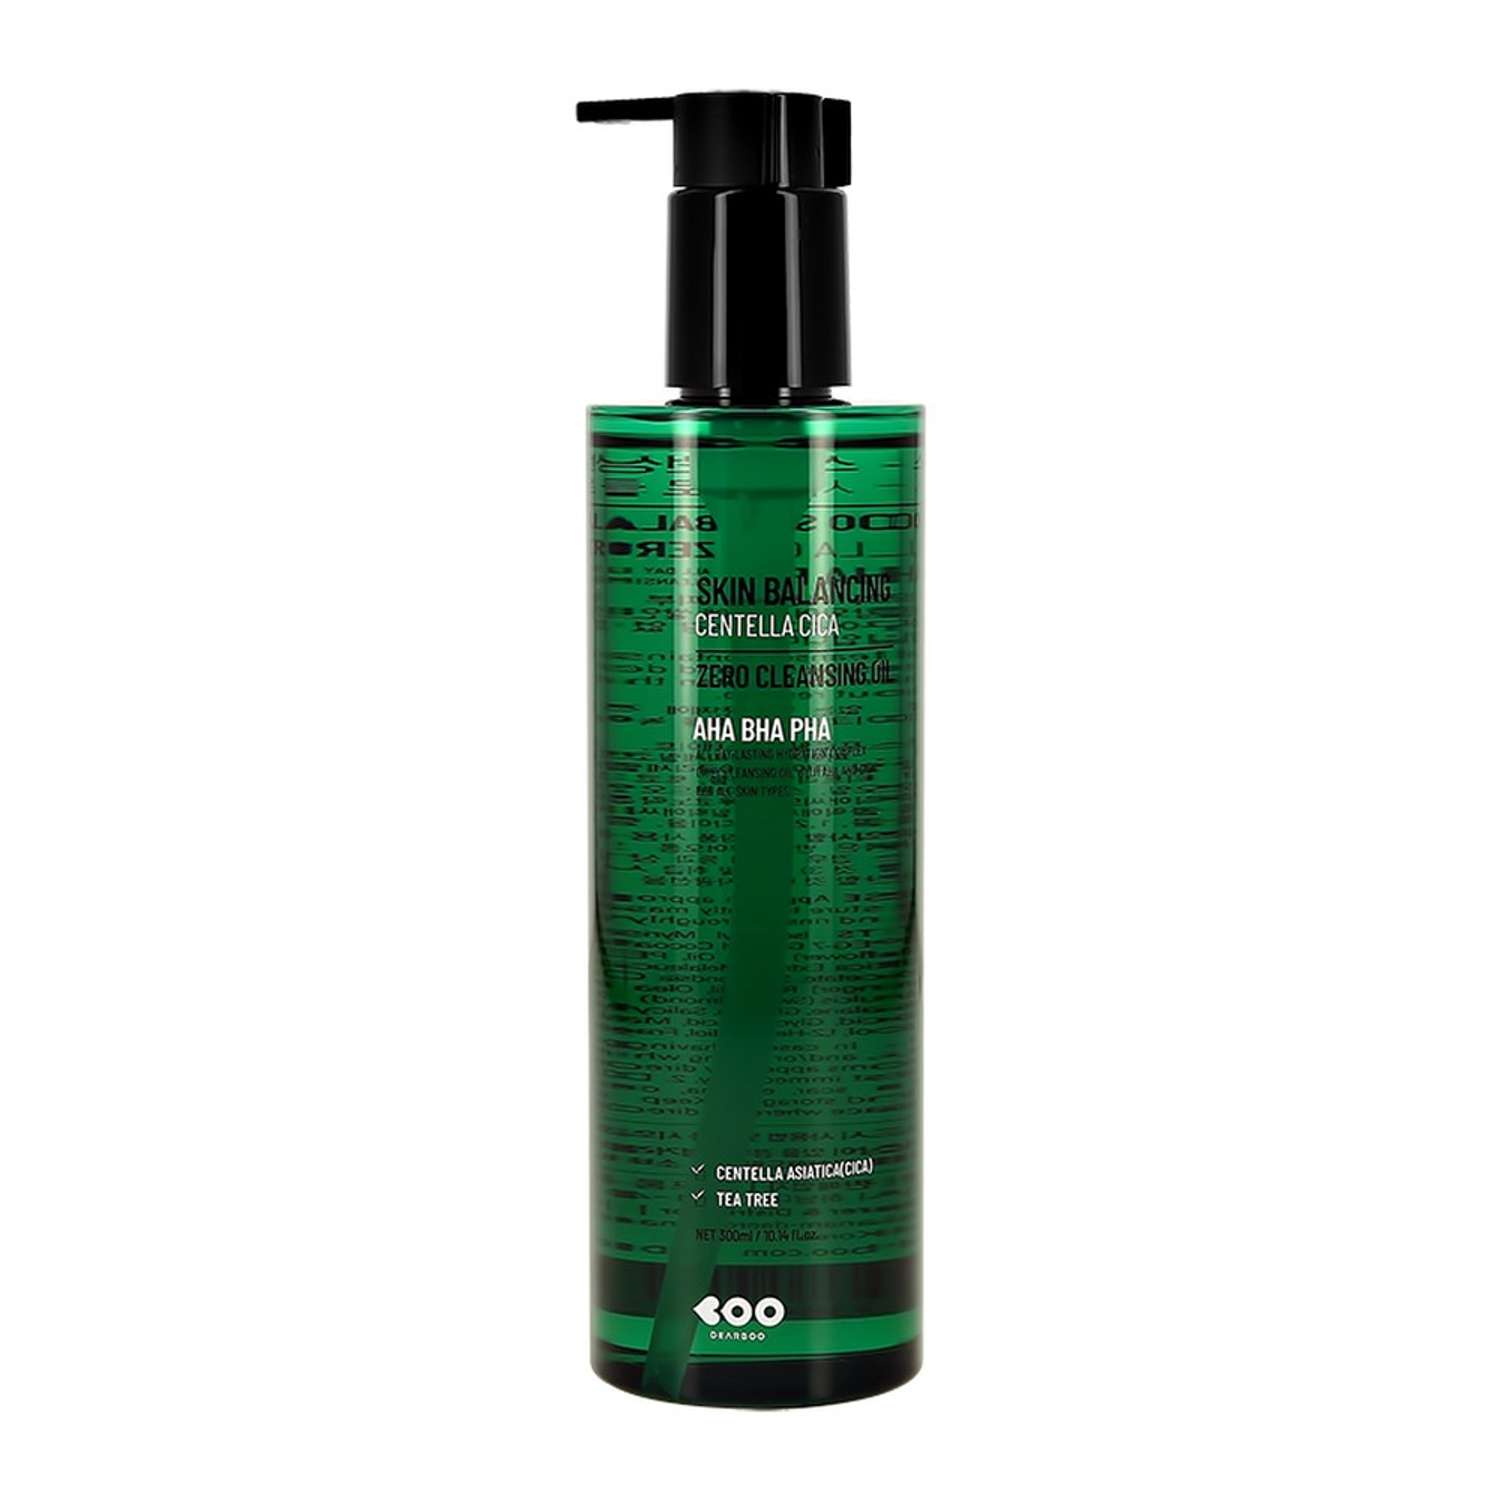 Гидрофильное масло Dearboo Skin balancing 300 мл - фото 1